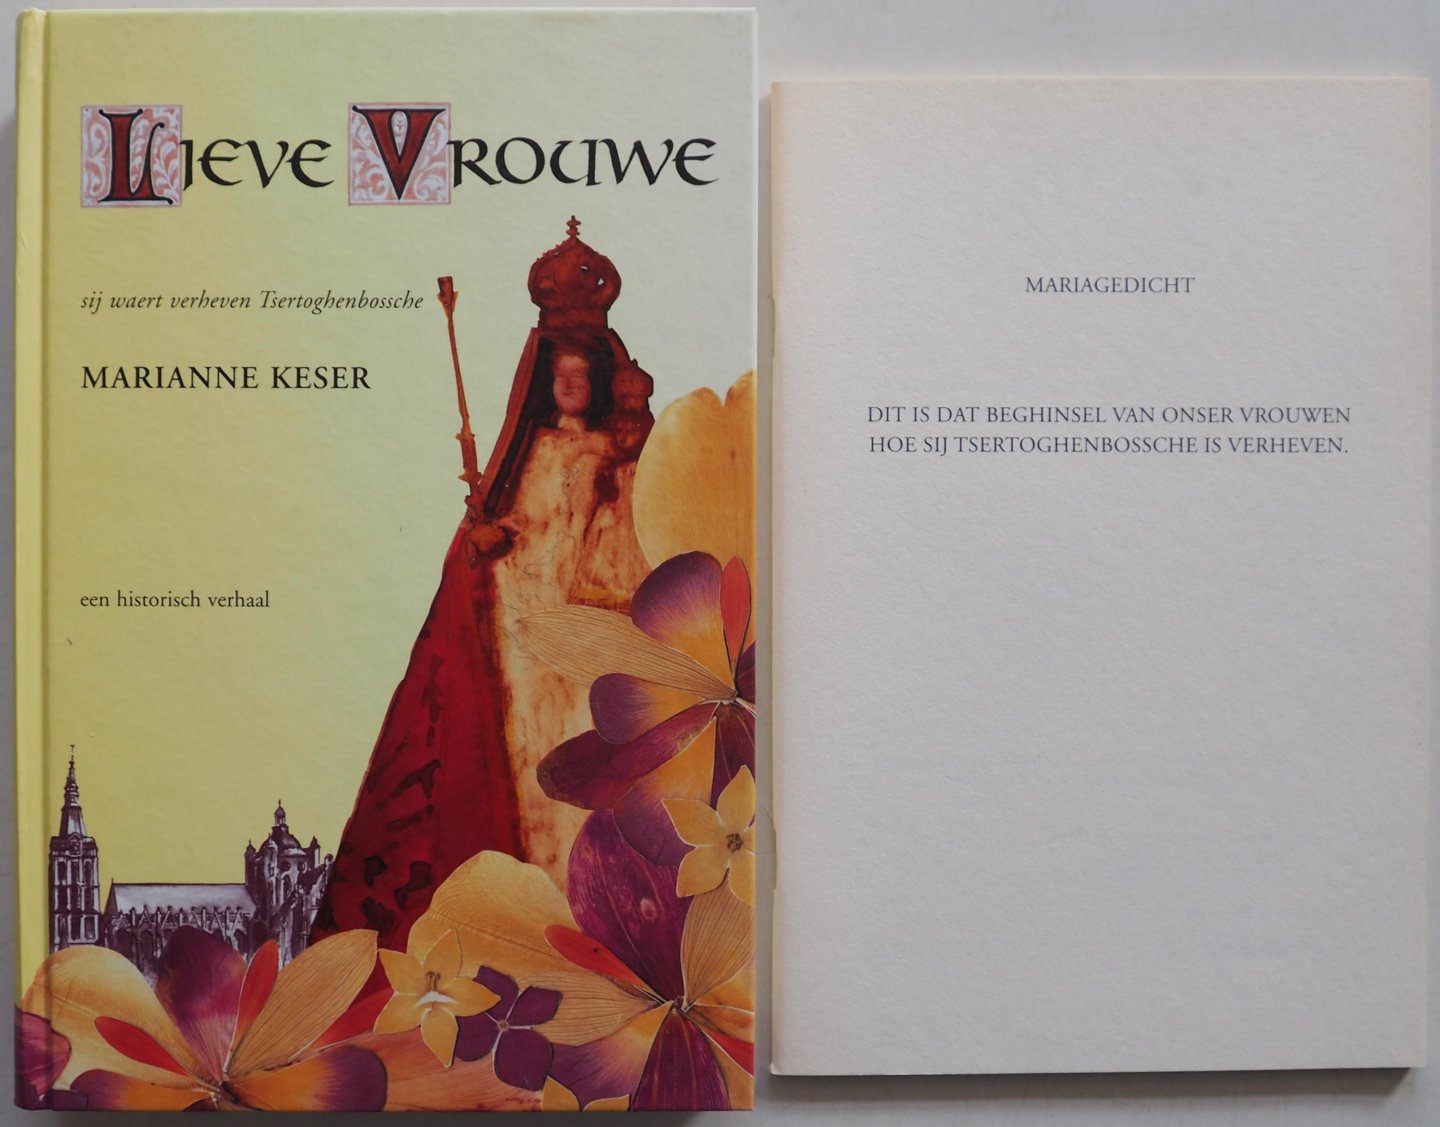 Keser, Marianne; Illustrator : Rijk, de Peer - Lieve Vrouwe Sij waert verheven Tsertoghenbossche. Met losse bijlage Mariagedicht blz 41